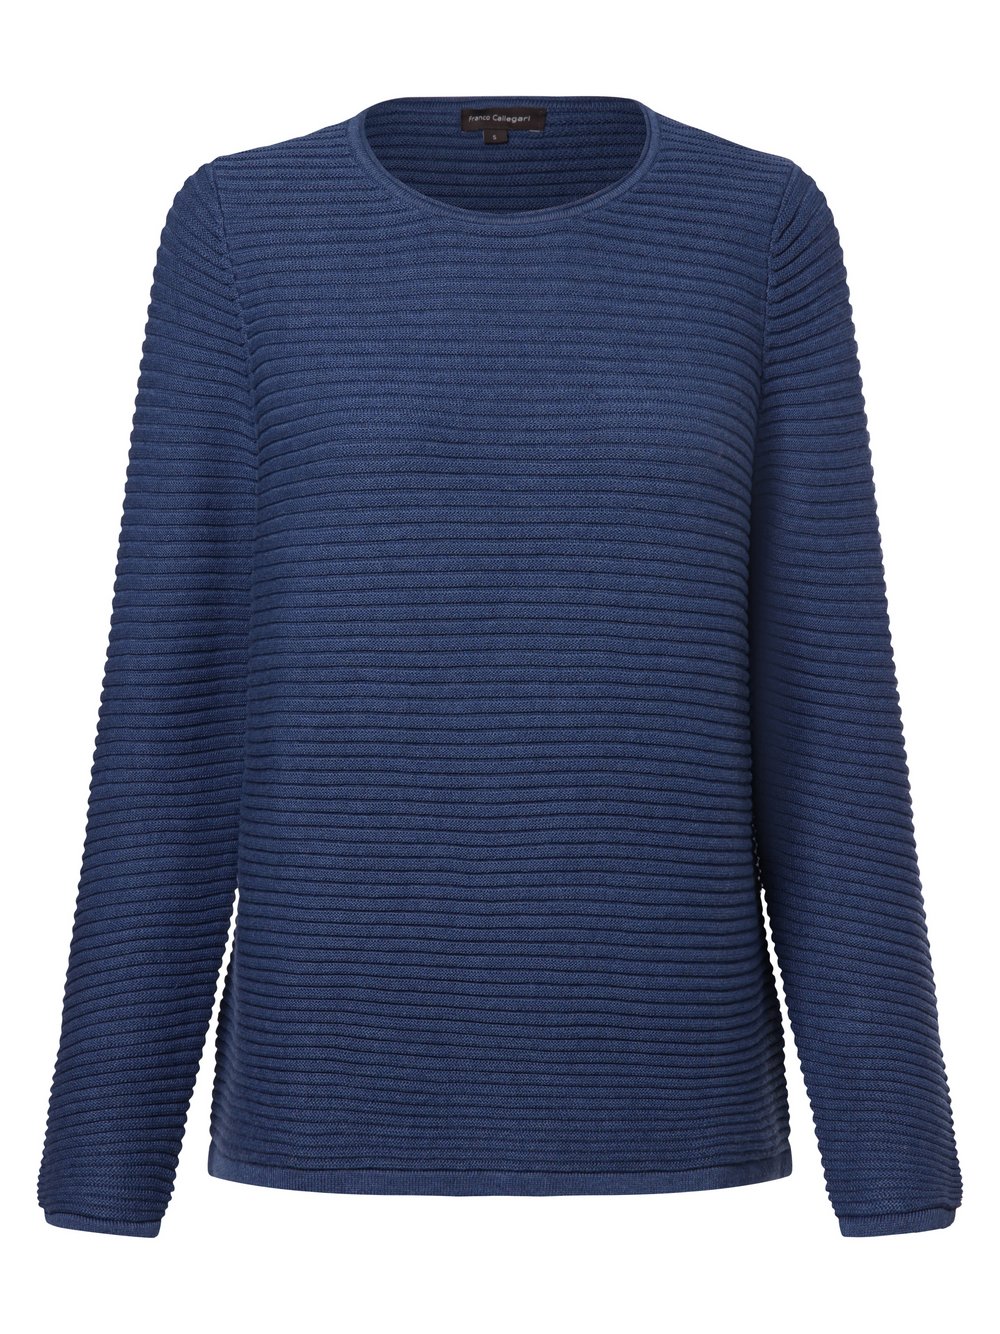 Franco Callegari Sweter damski Kobiety Bawełna niebieski jednolity, XL